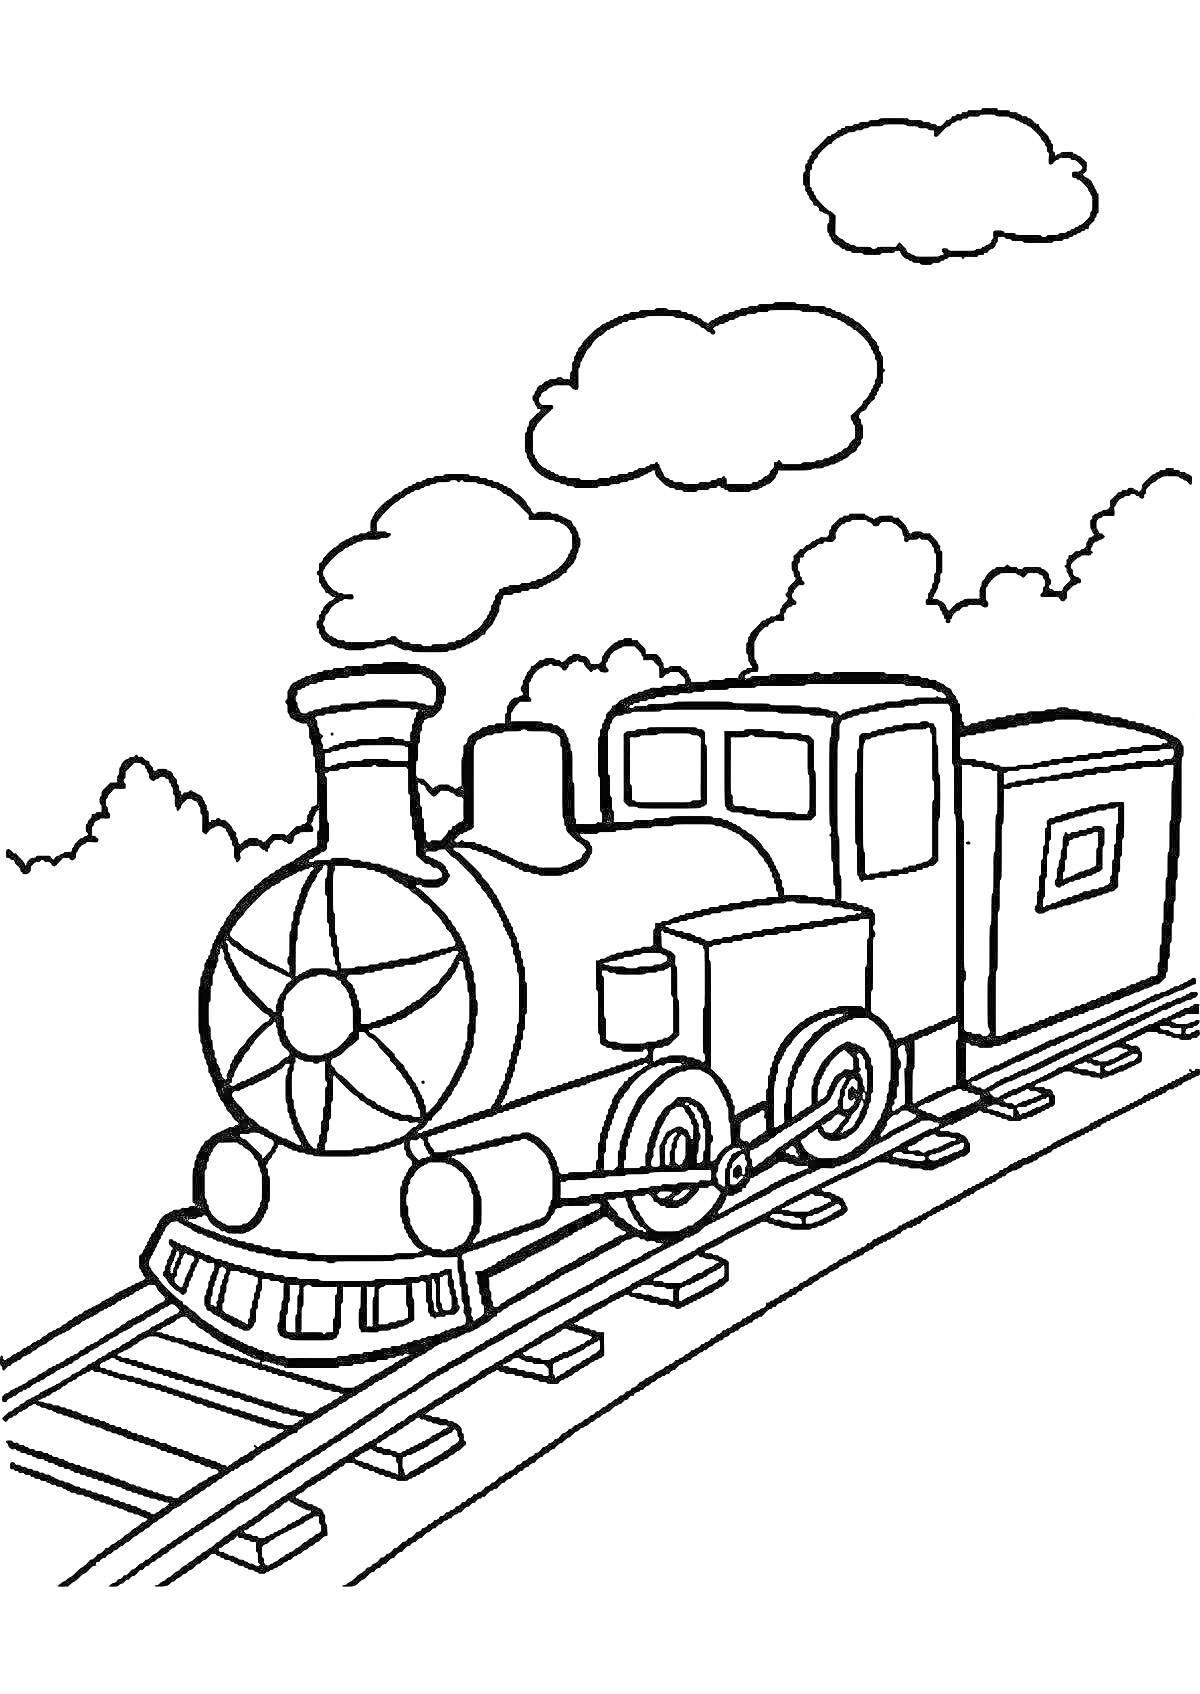 Раскраска Паровозик на железной дороге с облаками и деревьями